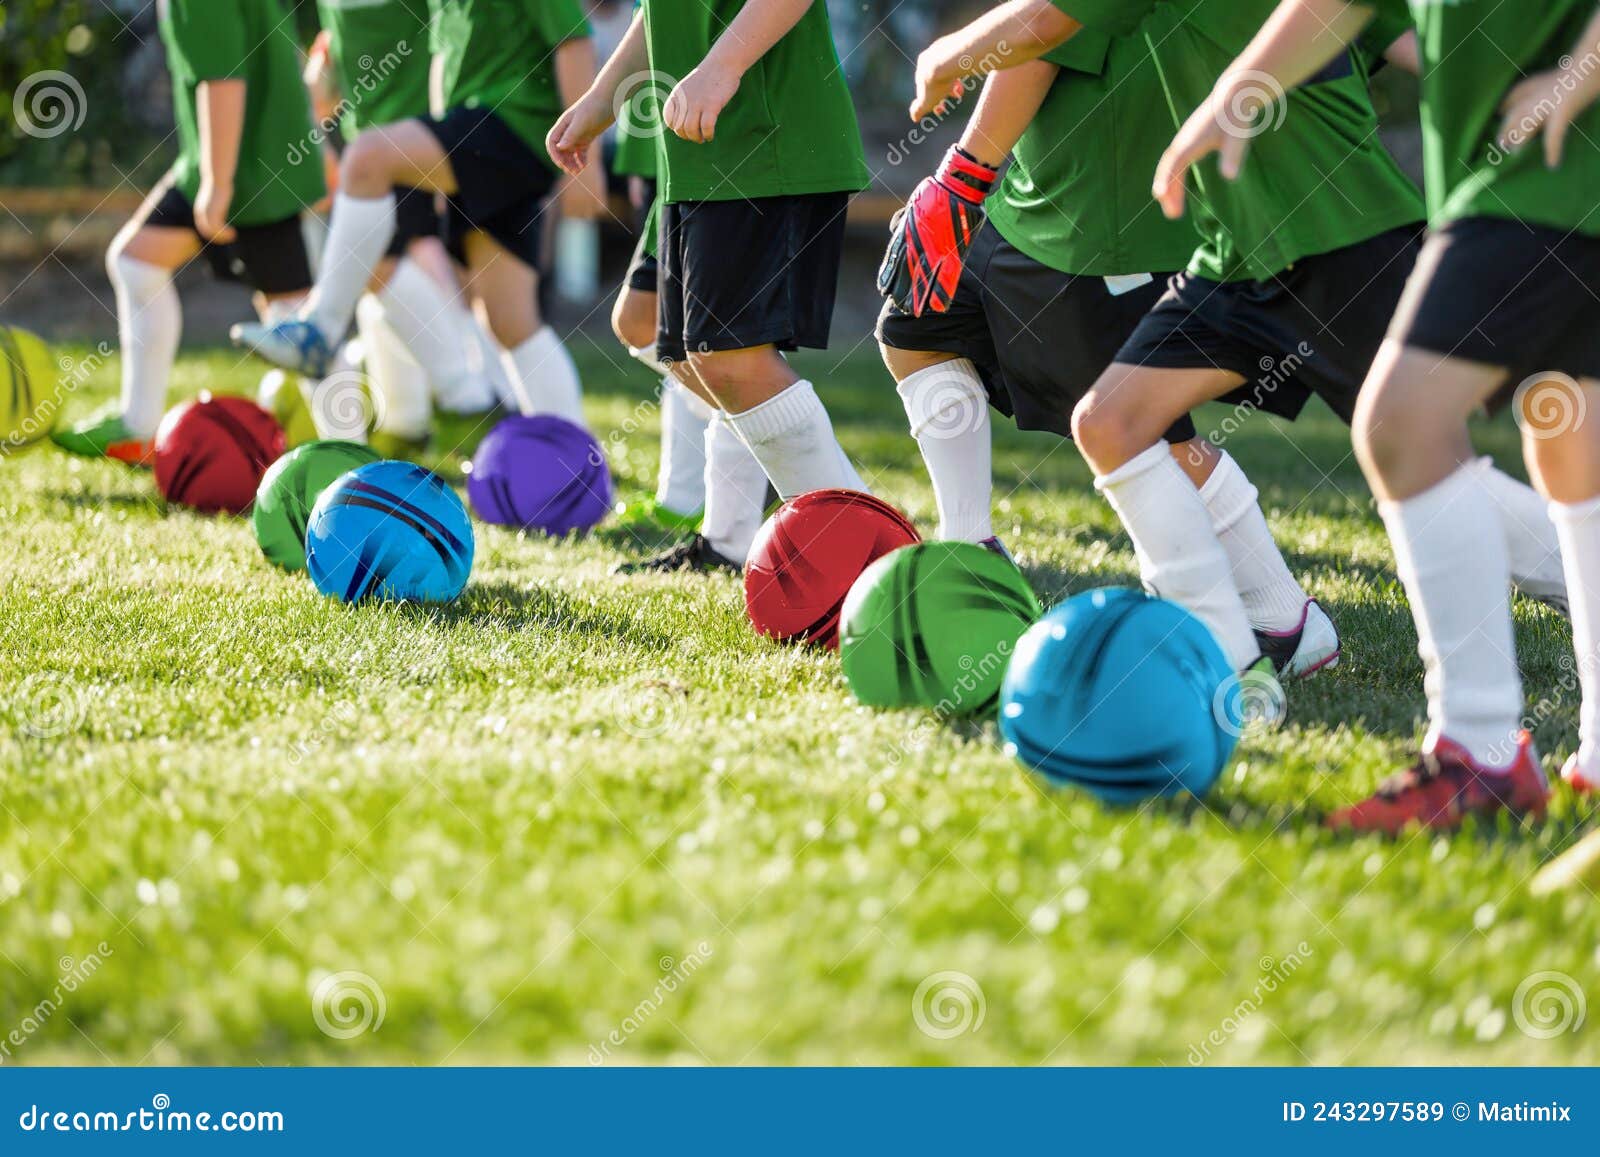 Esporte, treinamento de futebol e pessoas - jogador de futebol jogando com  bola no campo